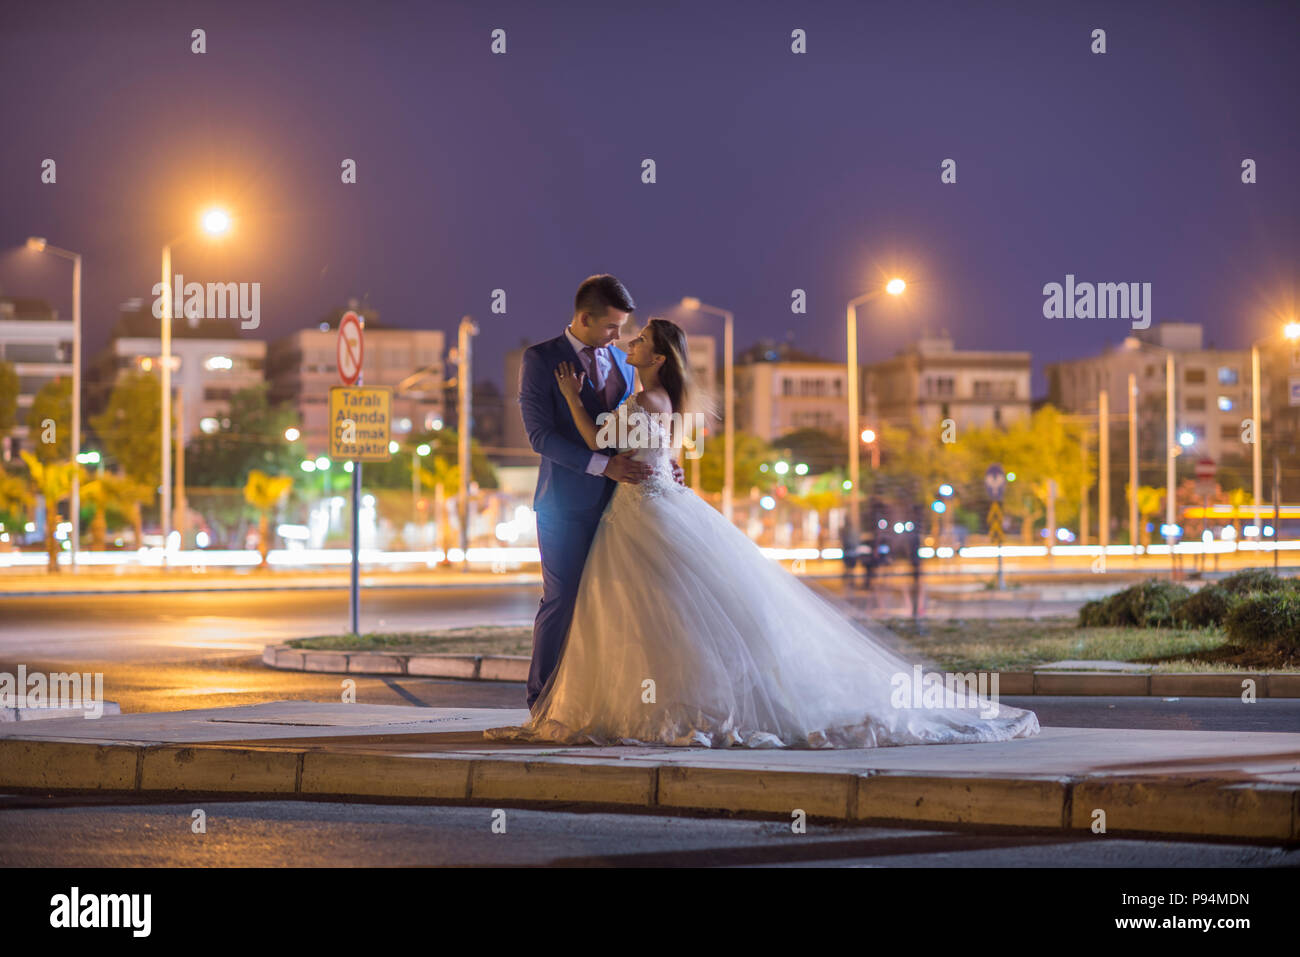 Hochzeit Braut und Bräutigam im Zentrum der Stadt bei Nacht Bräutigam Liebe Ehe Paare heiraten Stockfoto